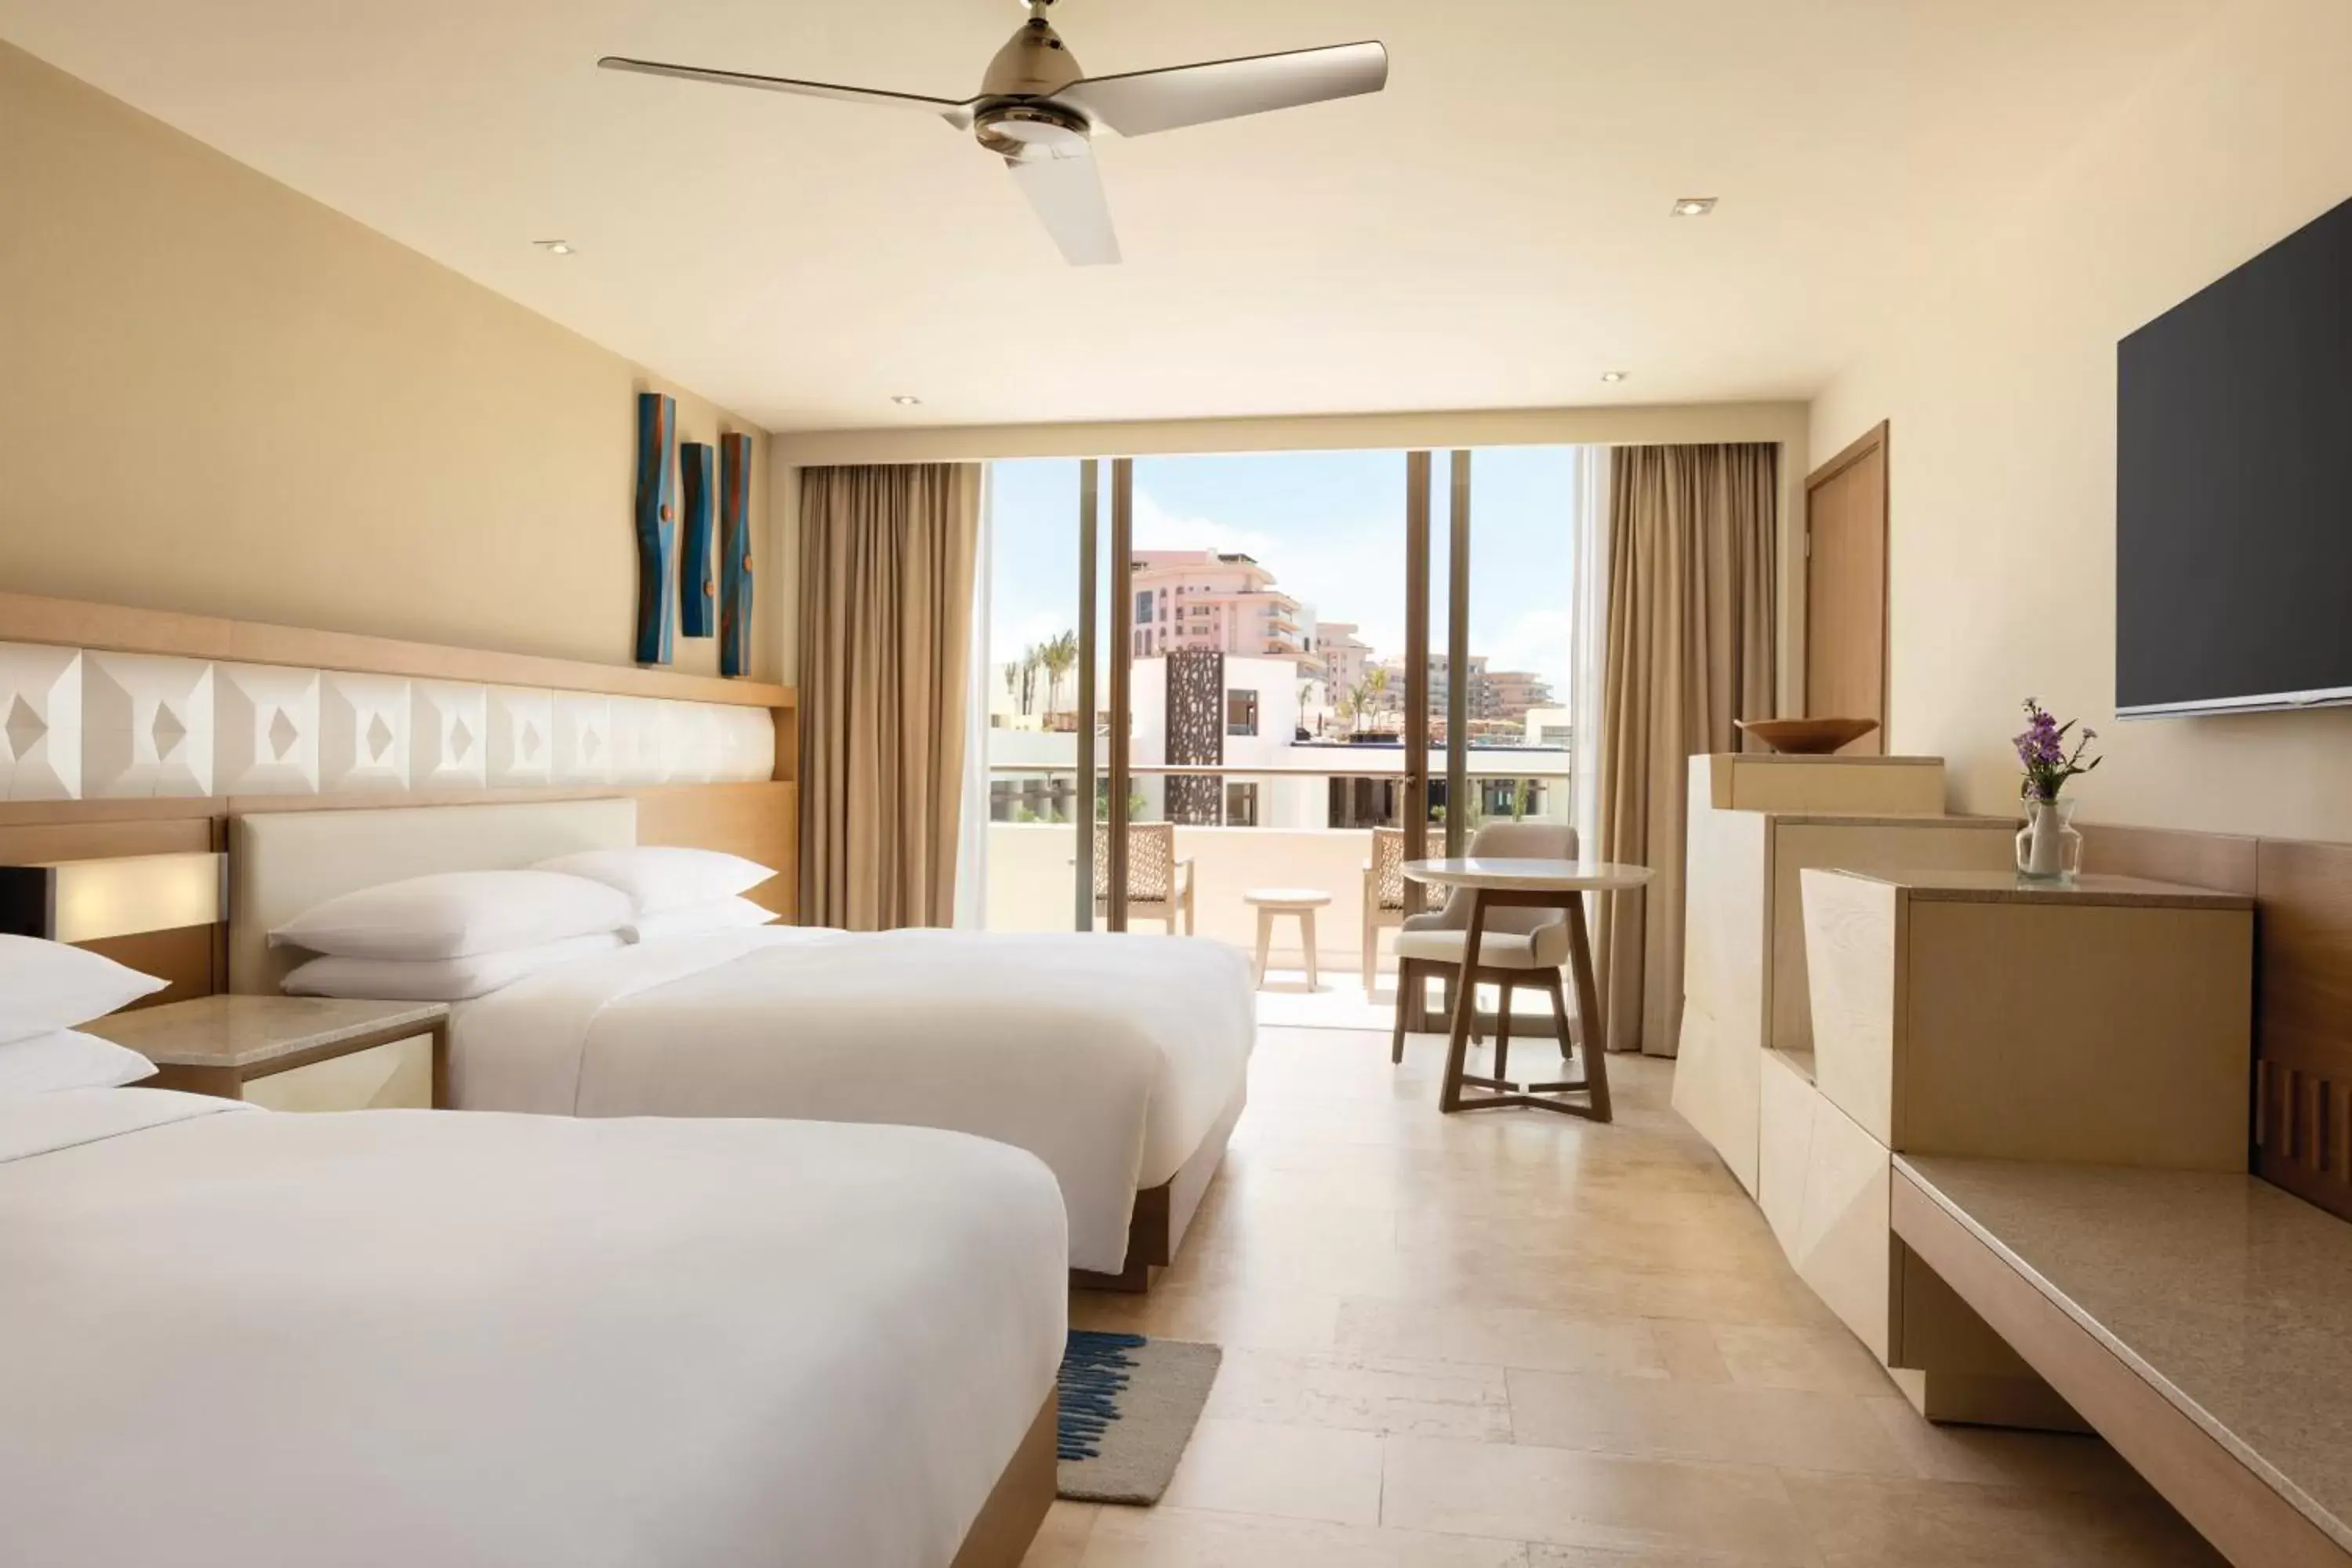 Double Room with Resort View in Hyatt Ziva Cancun